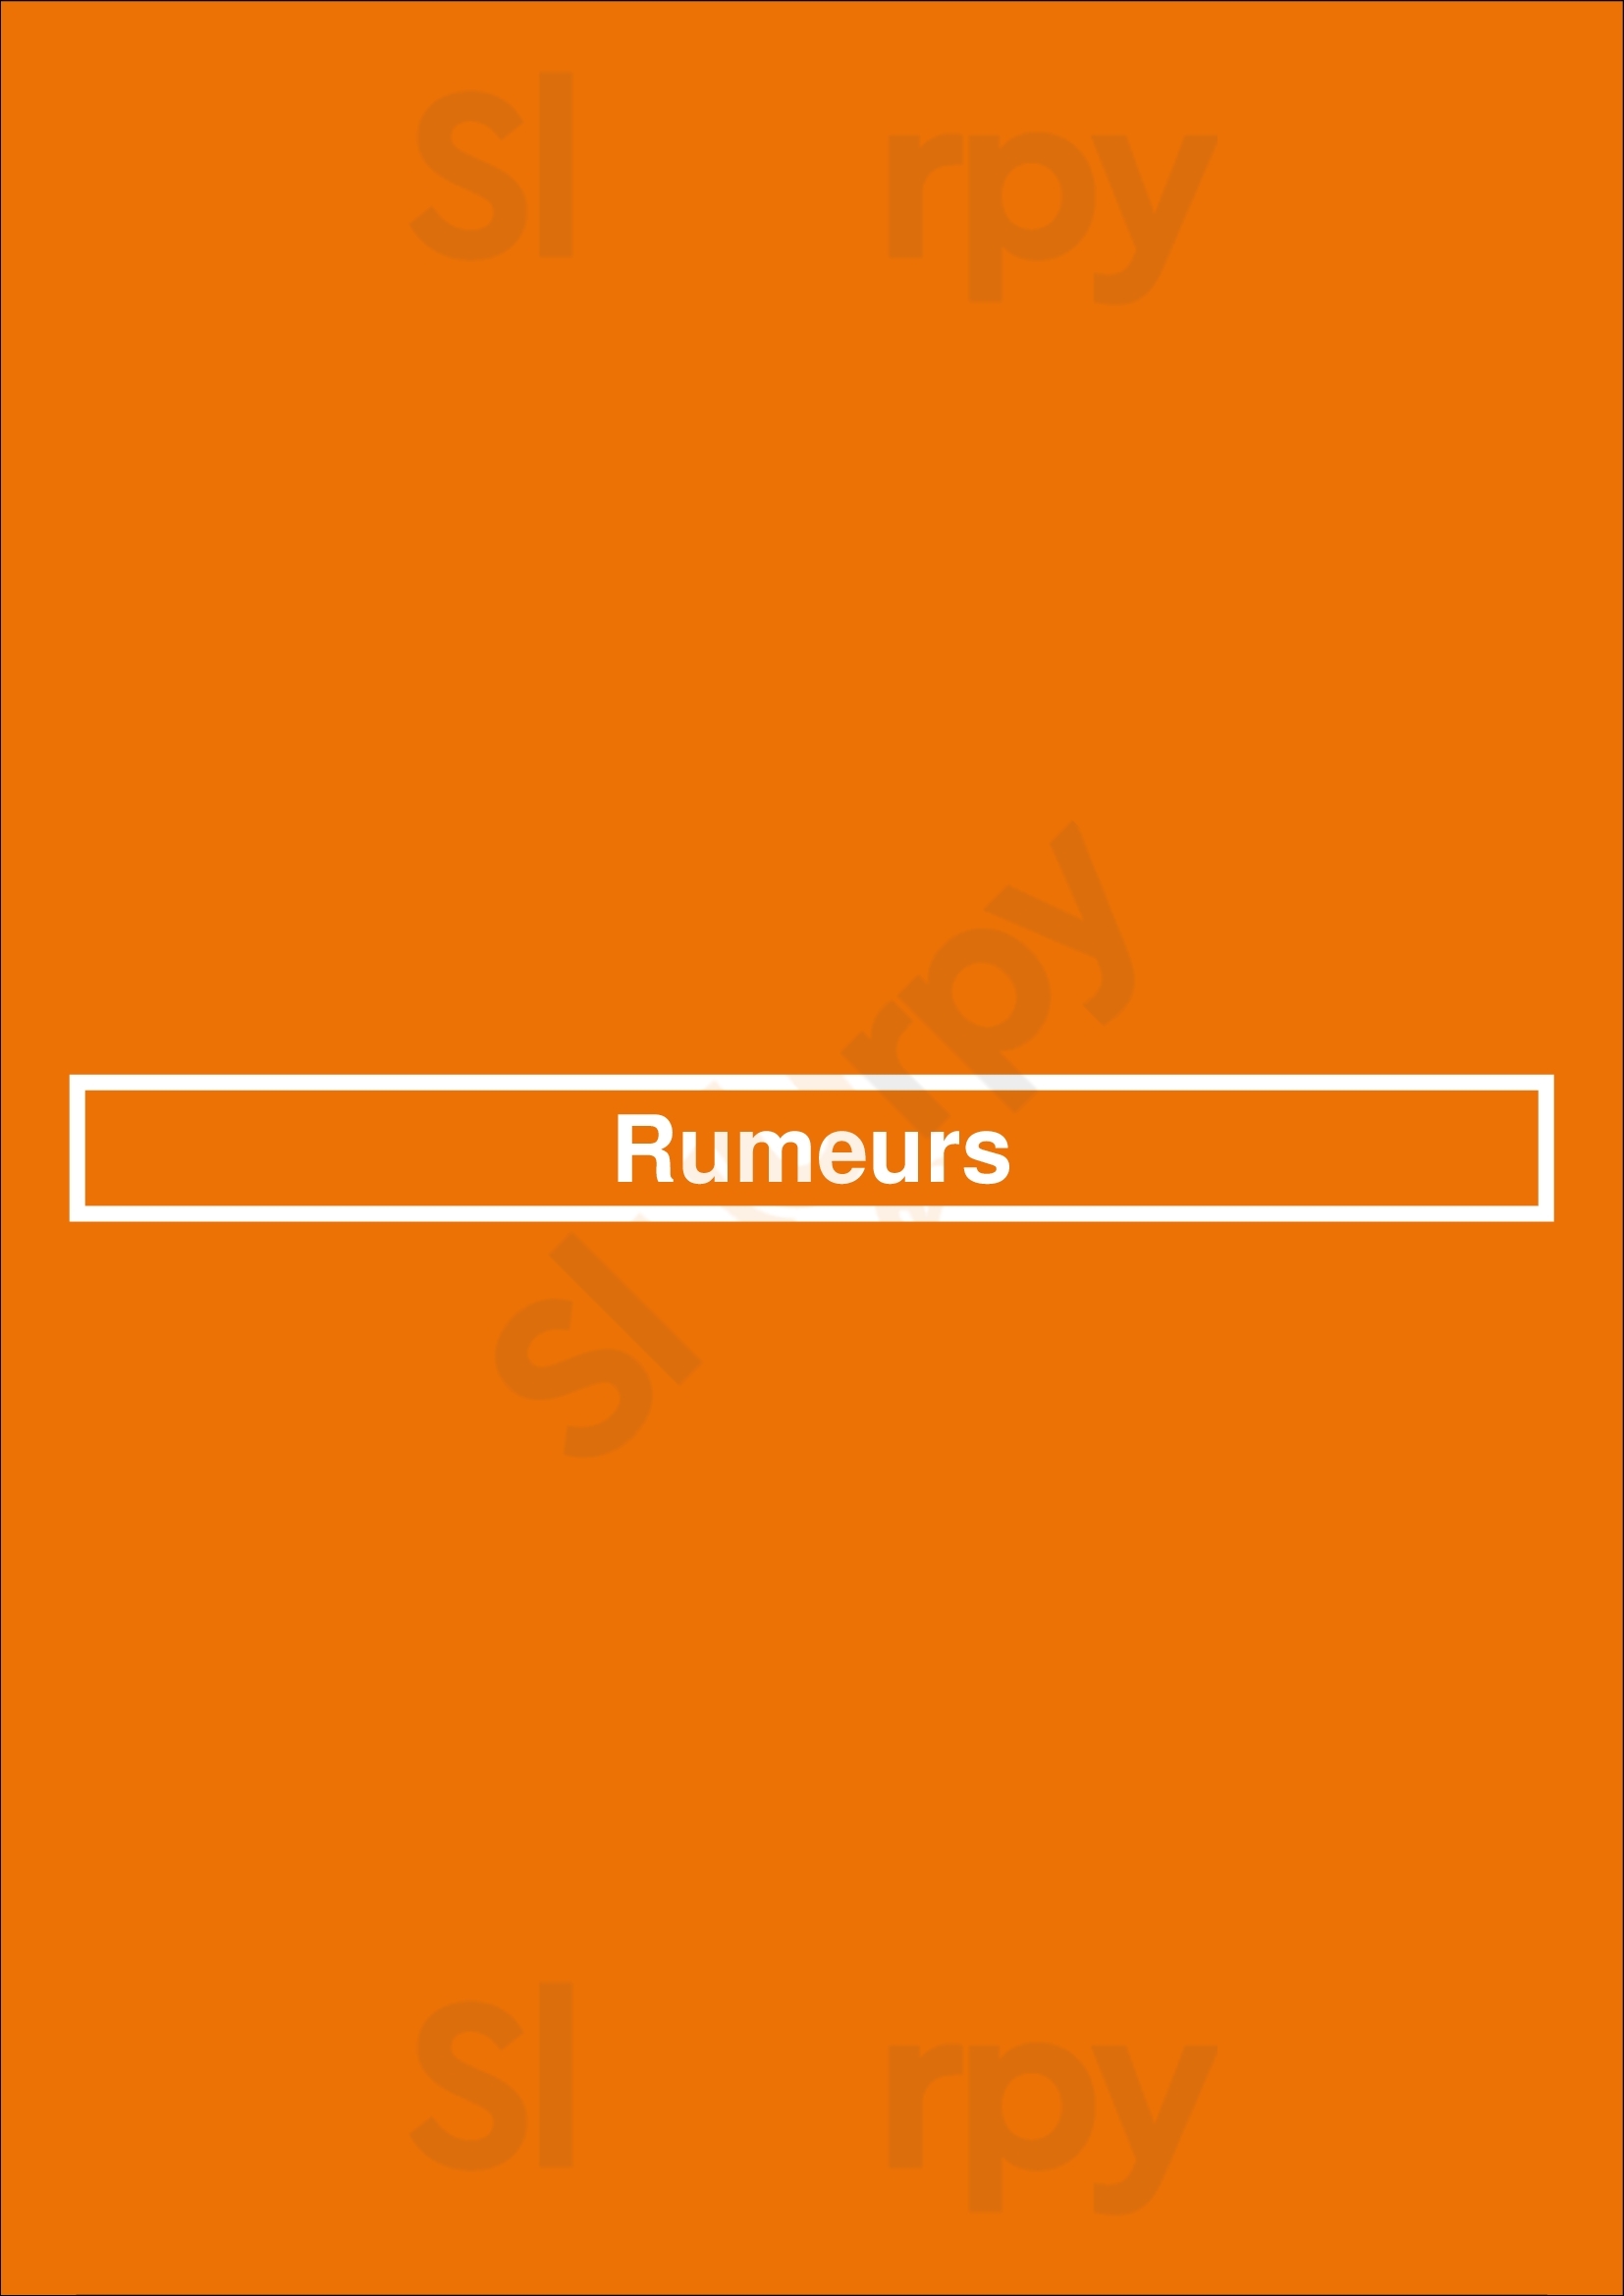 Rumeurs Paris Menu - 1